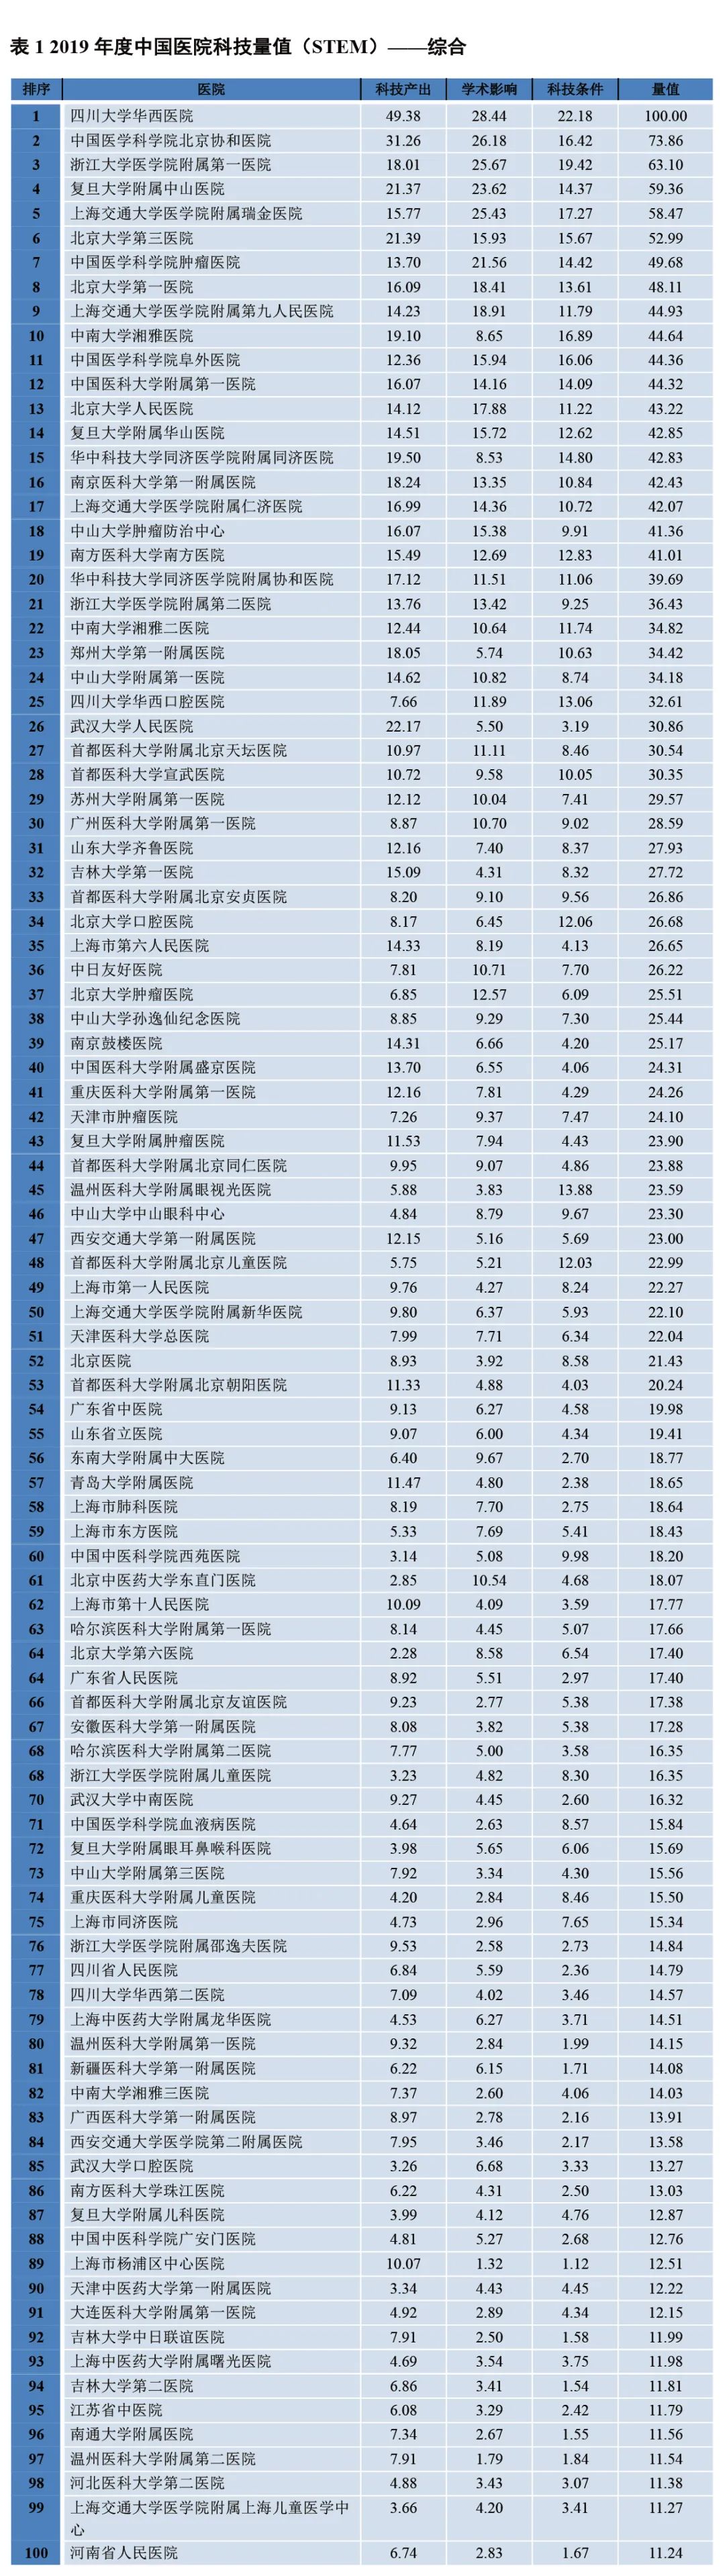 2019年度中国医院科技量值(STEM)发布，华西，协和，浙一位居三甲(附完整名单)